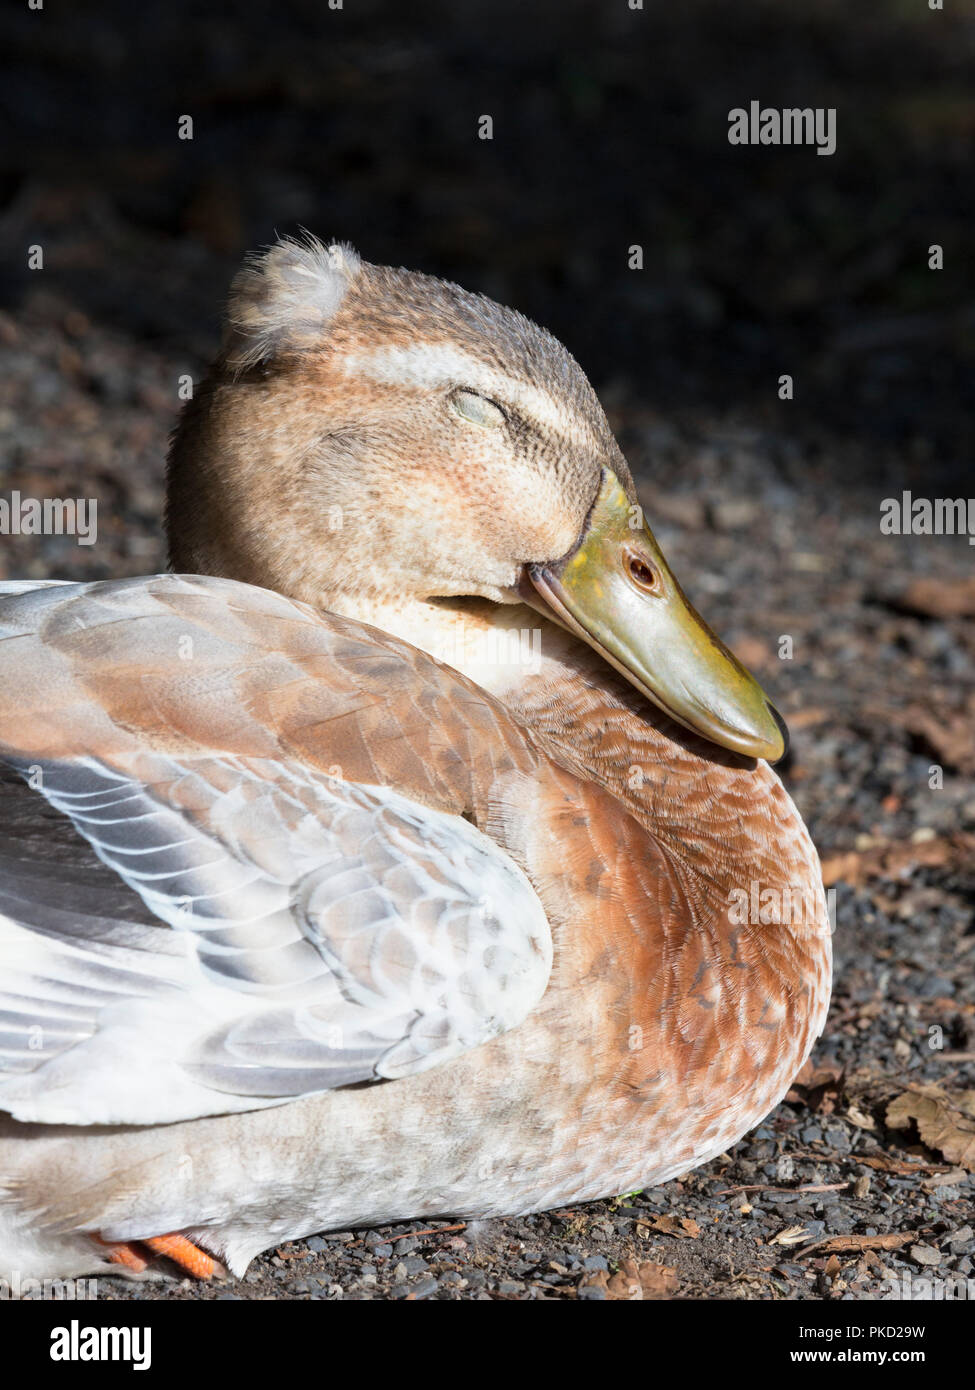 Mallard duck sleeping Stock Photo